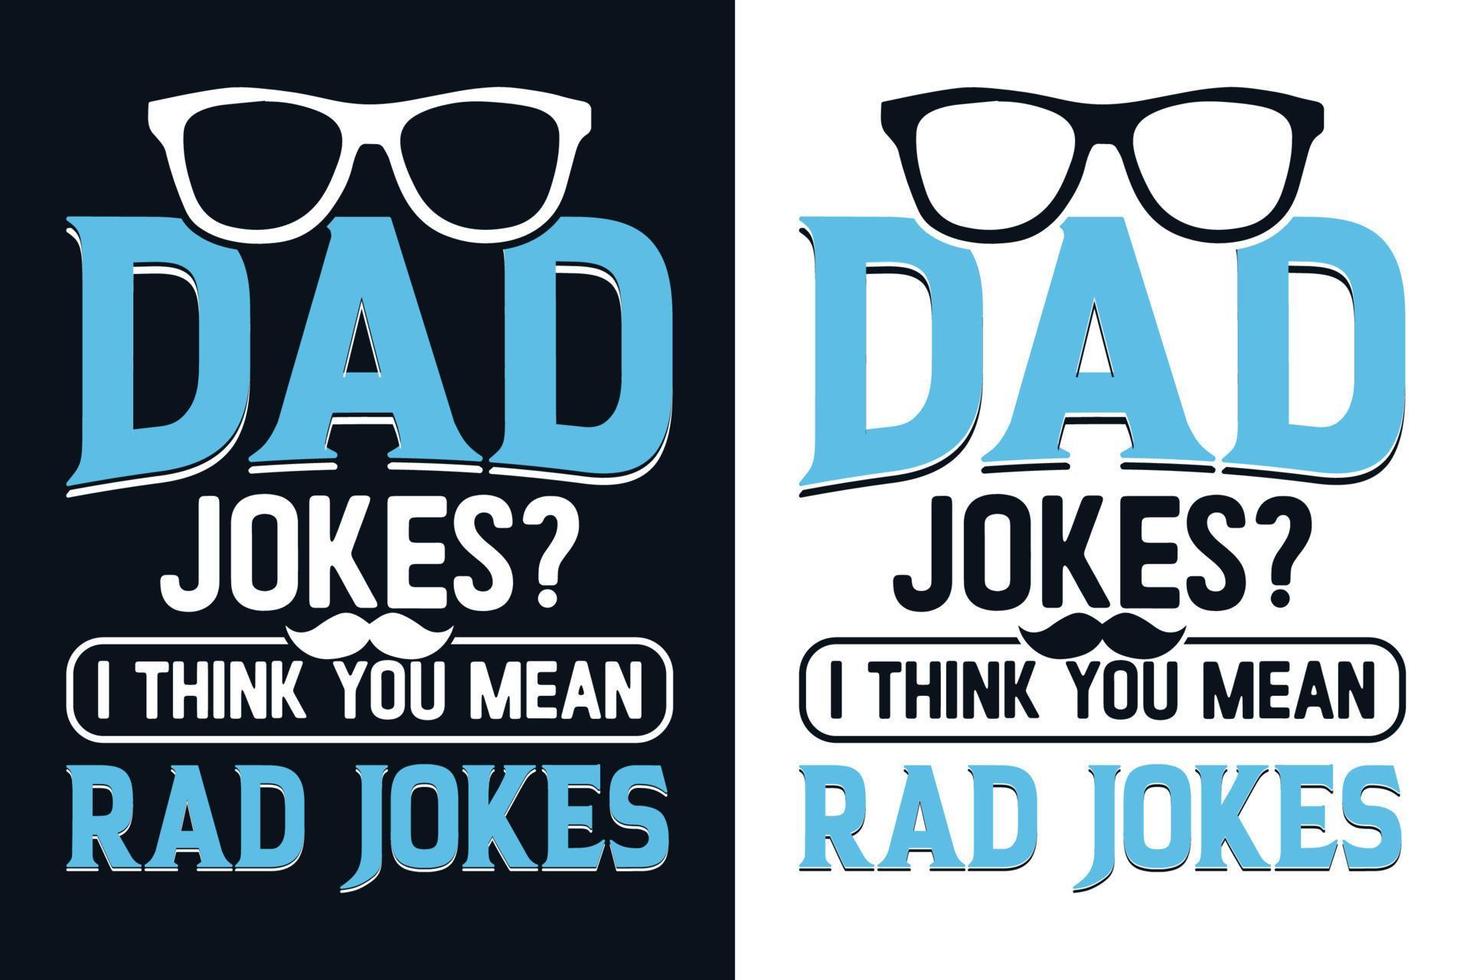 papá bromea diseño de camiseta del día del padre, diseño de camiseta con citas del día del padre vector